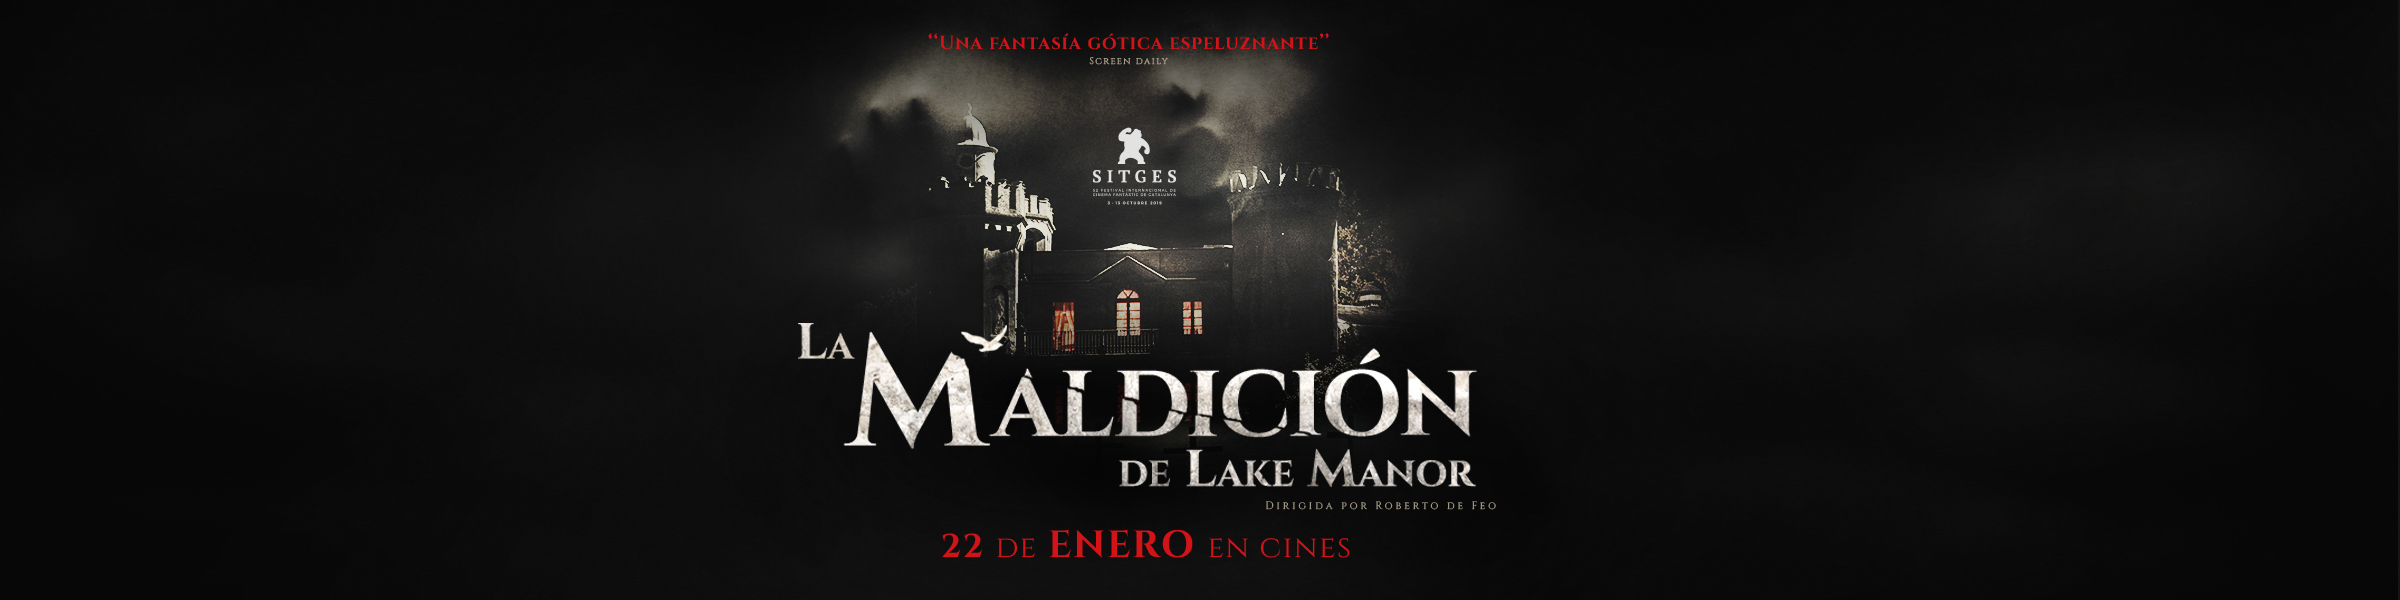 La maldición de Lake Manor en Cantones Cines de A Coruña